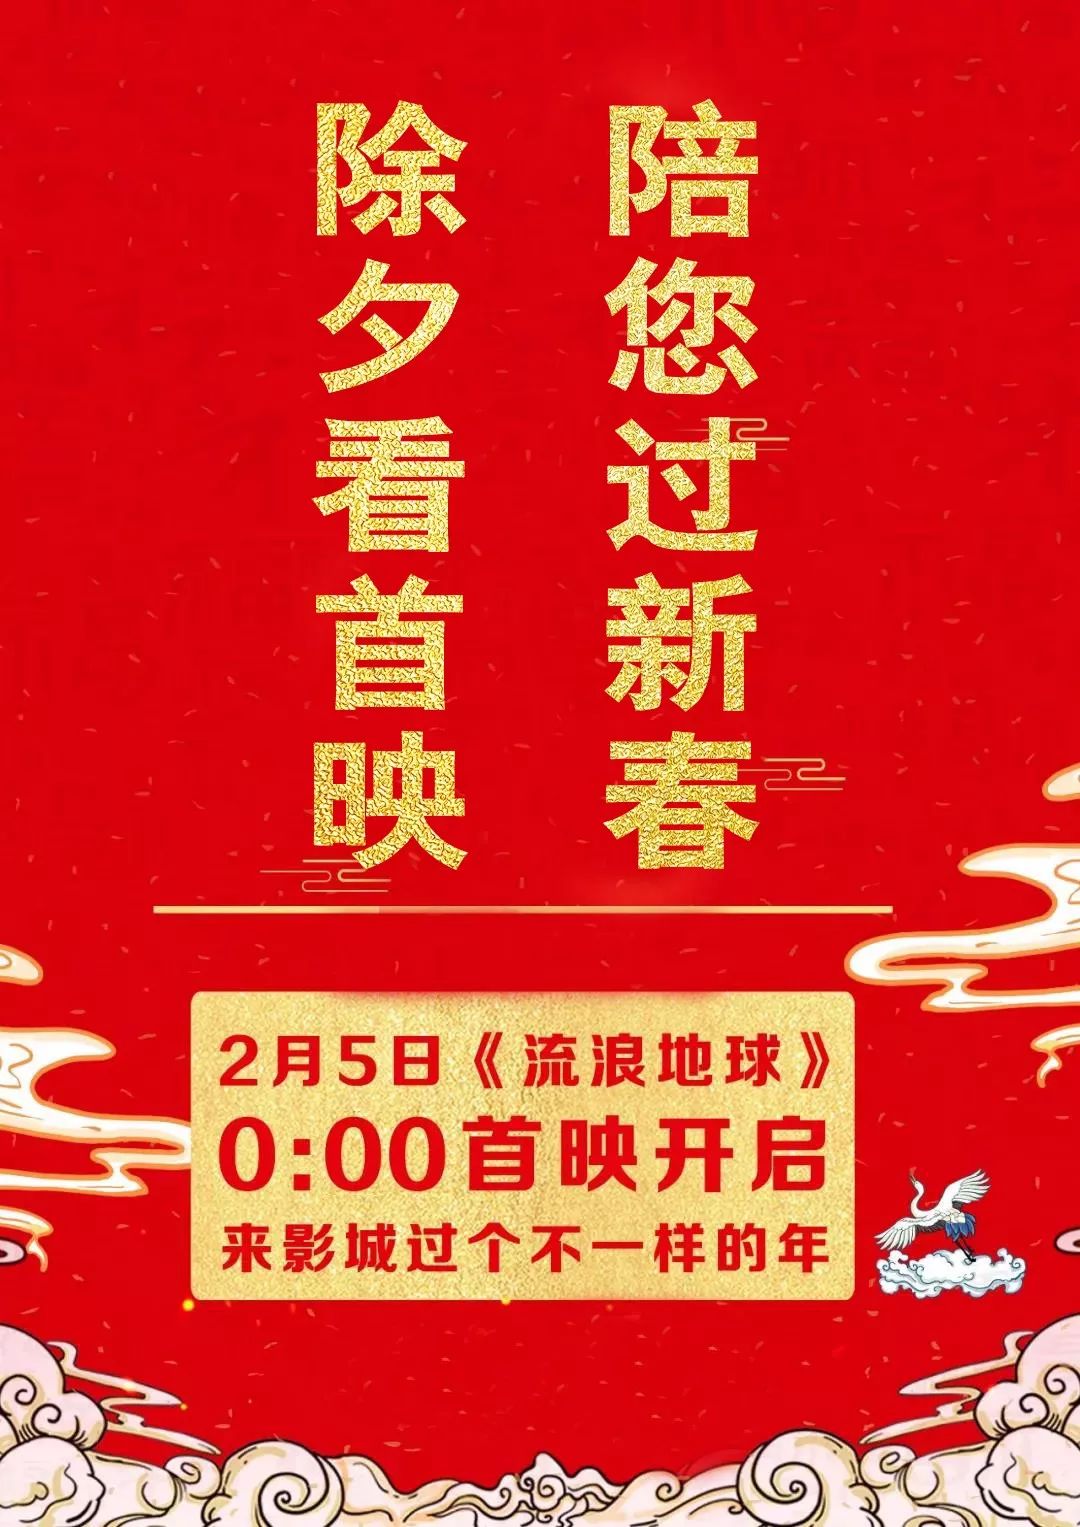 19.9元|徐崢讚吳京主演《流浪地球》 稱票房破《戰狼2》 娛樂 第21張